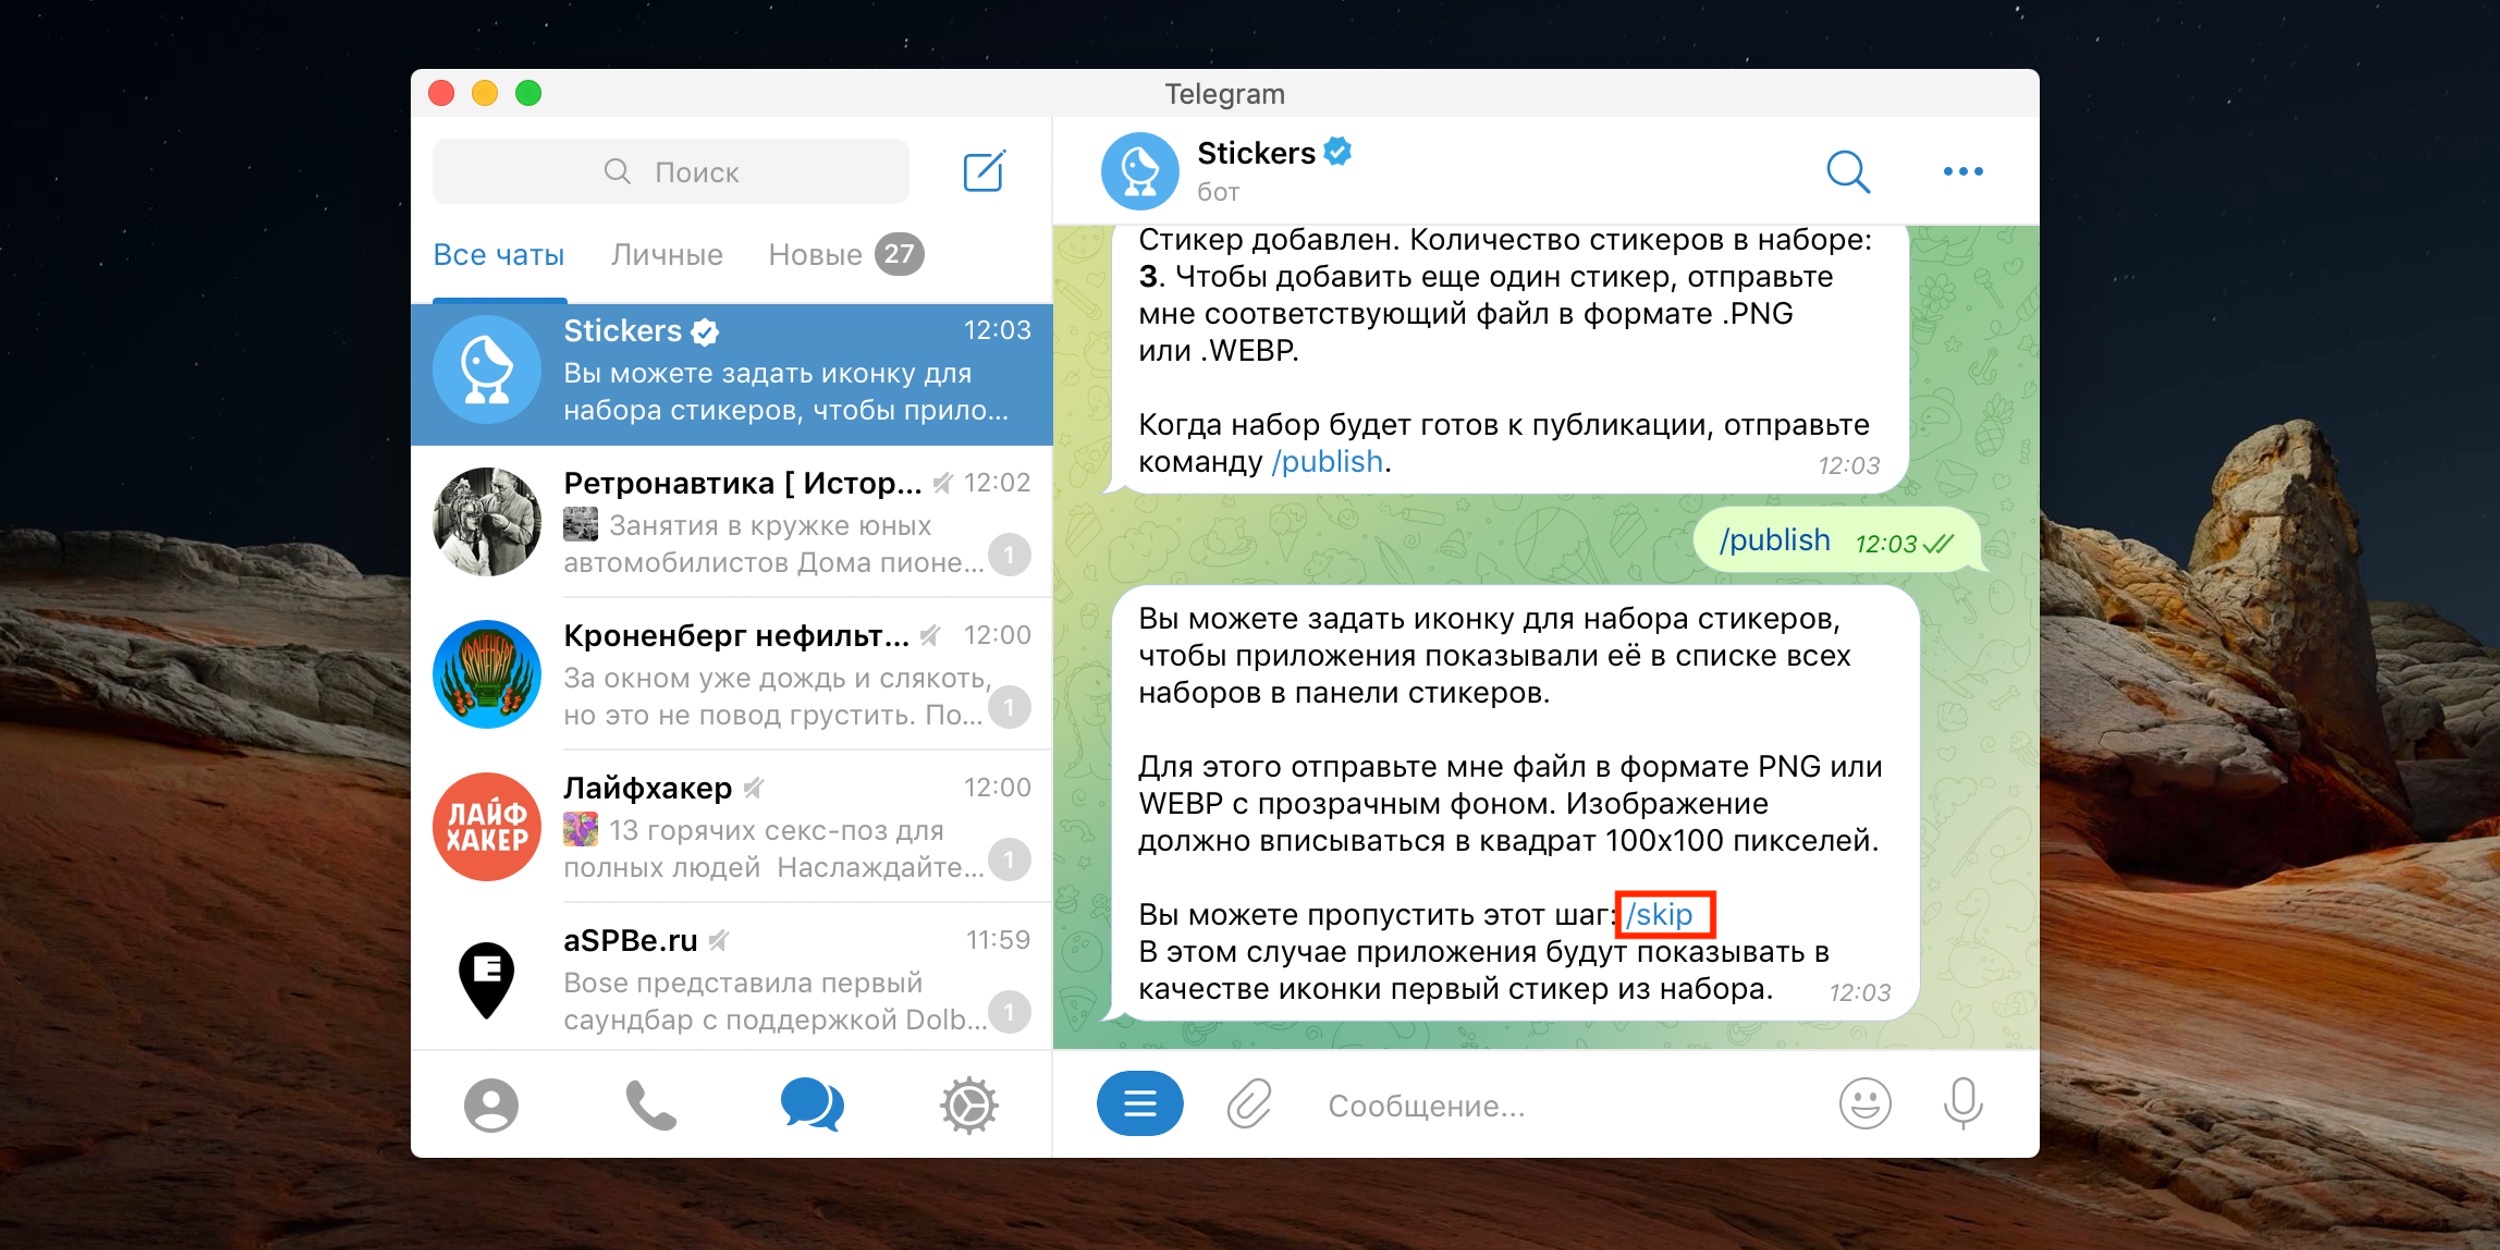 Скачать телеграмм для компьютера бесплатно на русском языке торрент фото 104